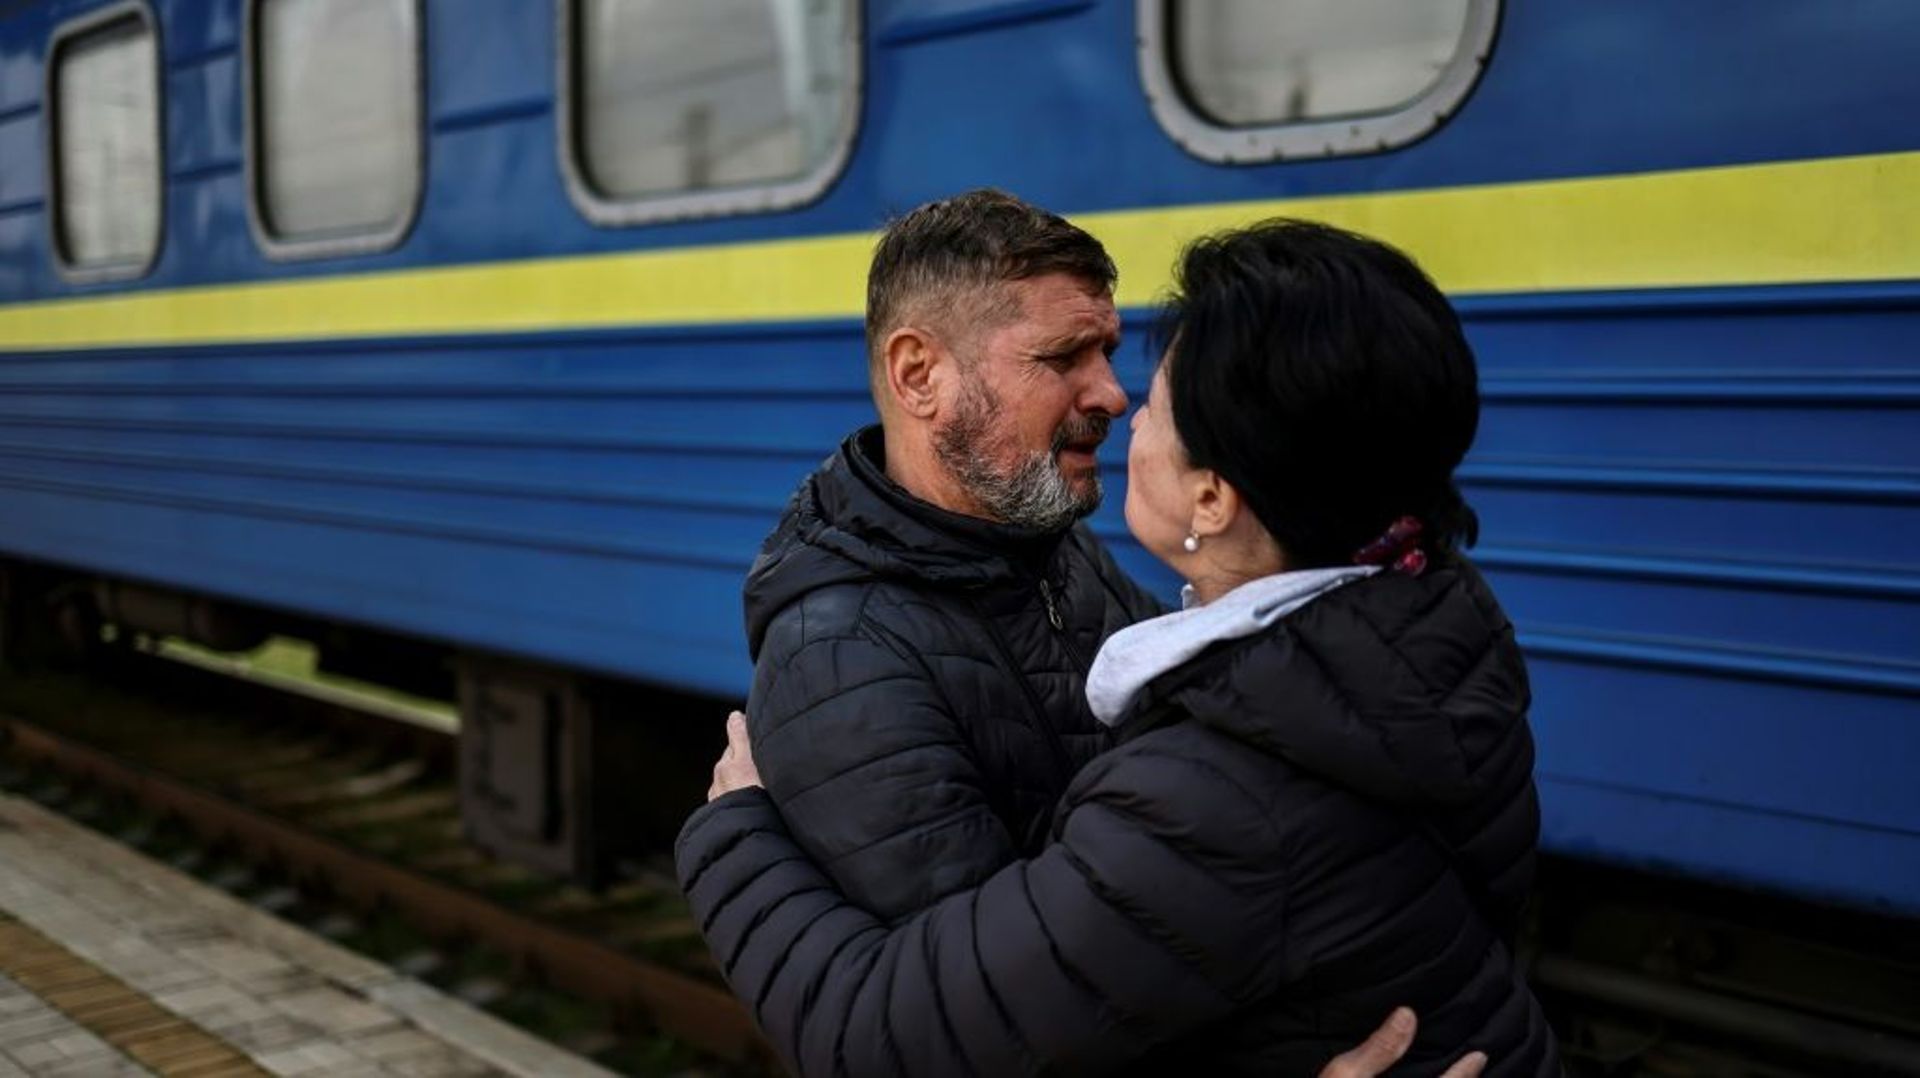 Un homme embrasse sa femme qui va prendre le train à la gare de Sloviansk, pour quitter l'Est de l'Ukraine en guerre, le 12 avril 2022